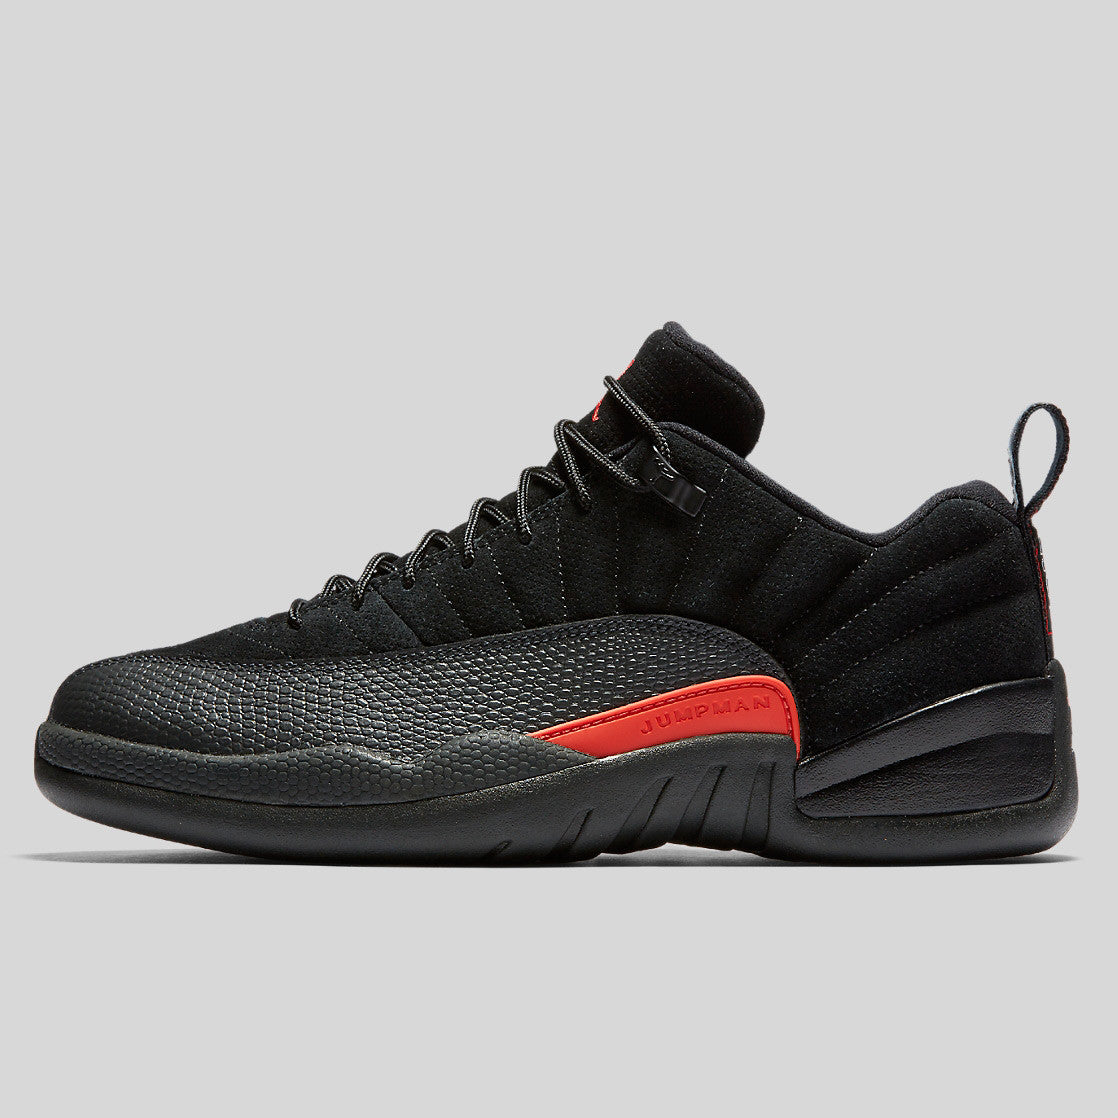 Nike Air Jordan 12 Retro Low Black Max 